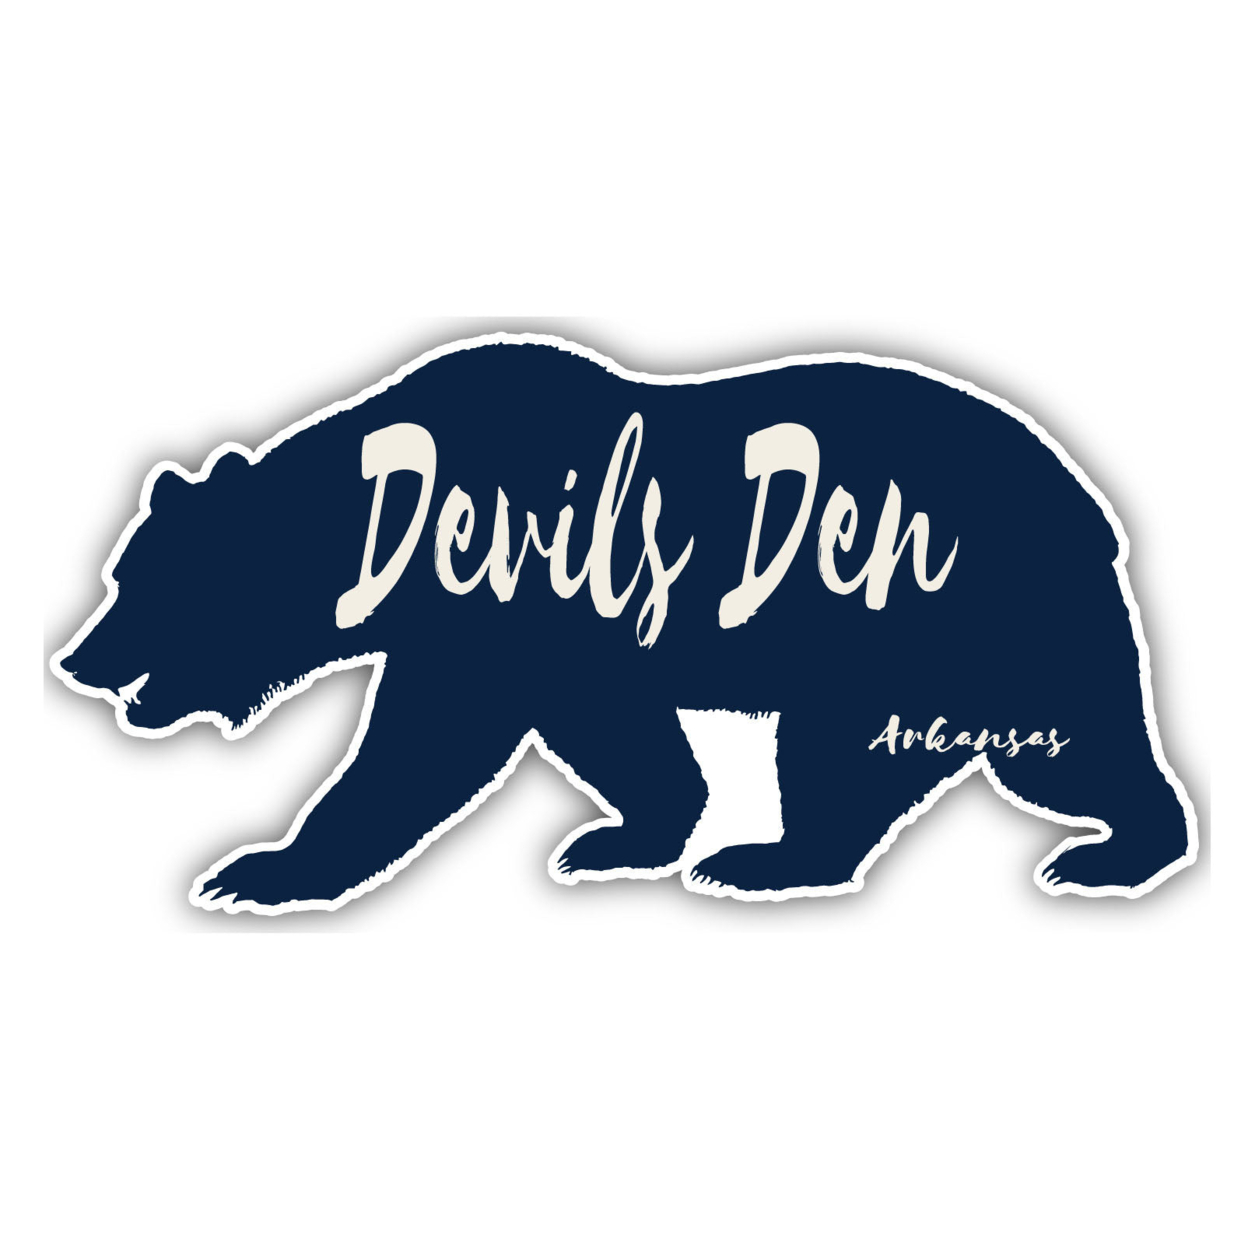 Devils Den Arkansas Souvenir Decorative Stickers (Choose Theme And Size) - 4-Pack, 8-Inch, Bear